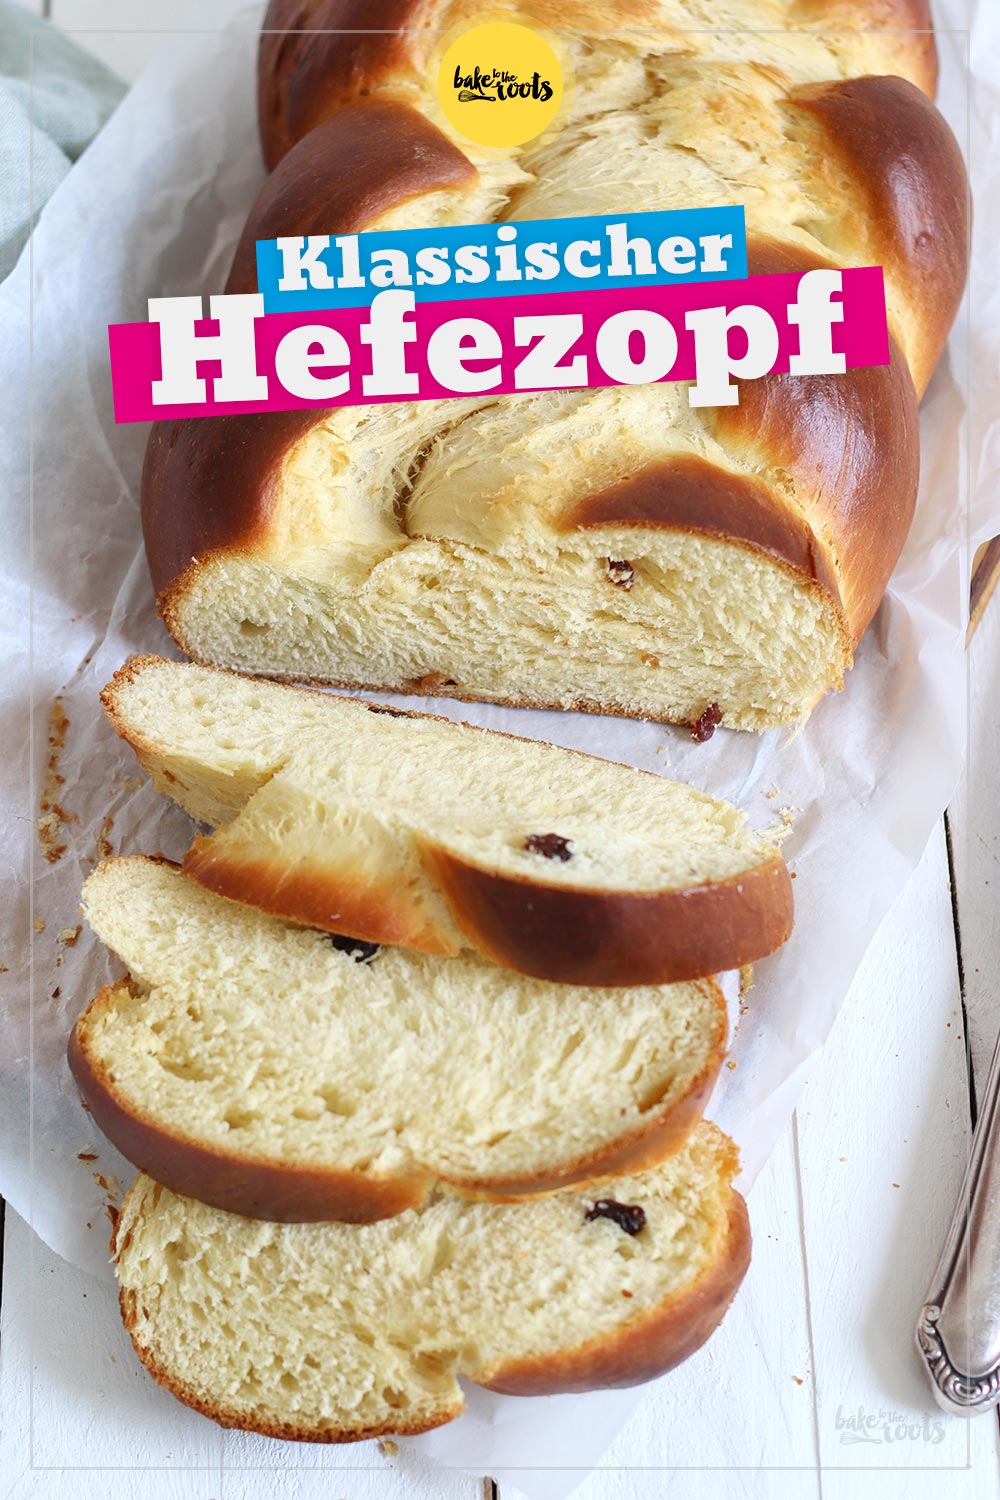 Klassischer Hefezopf | Bake to the roots